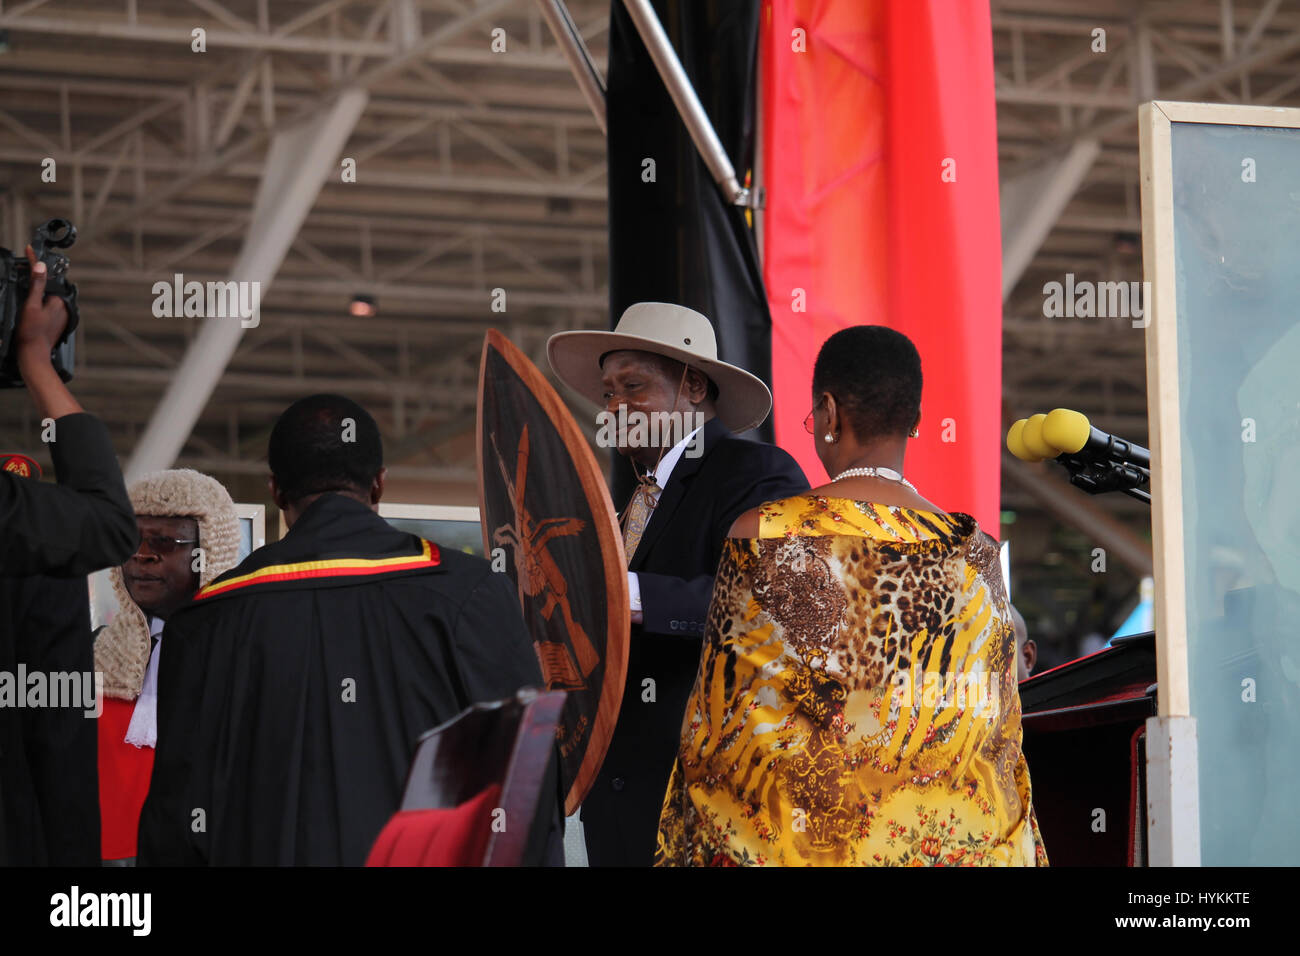 KAMPALA, UGANDA: Präsident Yoweri Museveni hält einen Schild nach seiner Vereidigung.  Yoweri Museveni hat als Präsident von Uganda heute nach Wahlen, die am 18. Februar 2016 stattfand vereidigt worden.  Präsident Museveni kann gesehen werden, der Eidesleistung, Unterzeichnung der offiziellen Dokumente, eine zeremonielle Schild und Inspektion der Ehrengarde. Andere Bilder zeigen begeisterte Tänzer, Mitglieder von der Polizei als auch die Streitkräfte Band. Die Zeremonie in Kampala, während stattfand war zum sechsten Mal Museveni als Präsident, wurde an der Macht über vereidigt worden Stockfoto